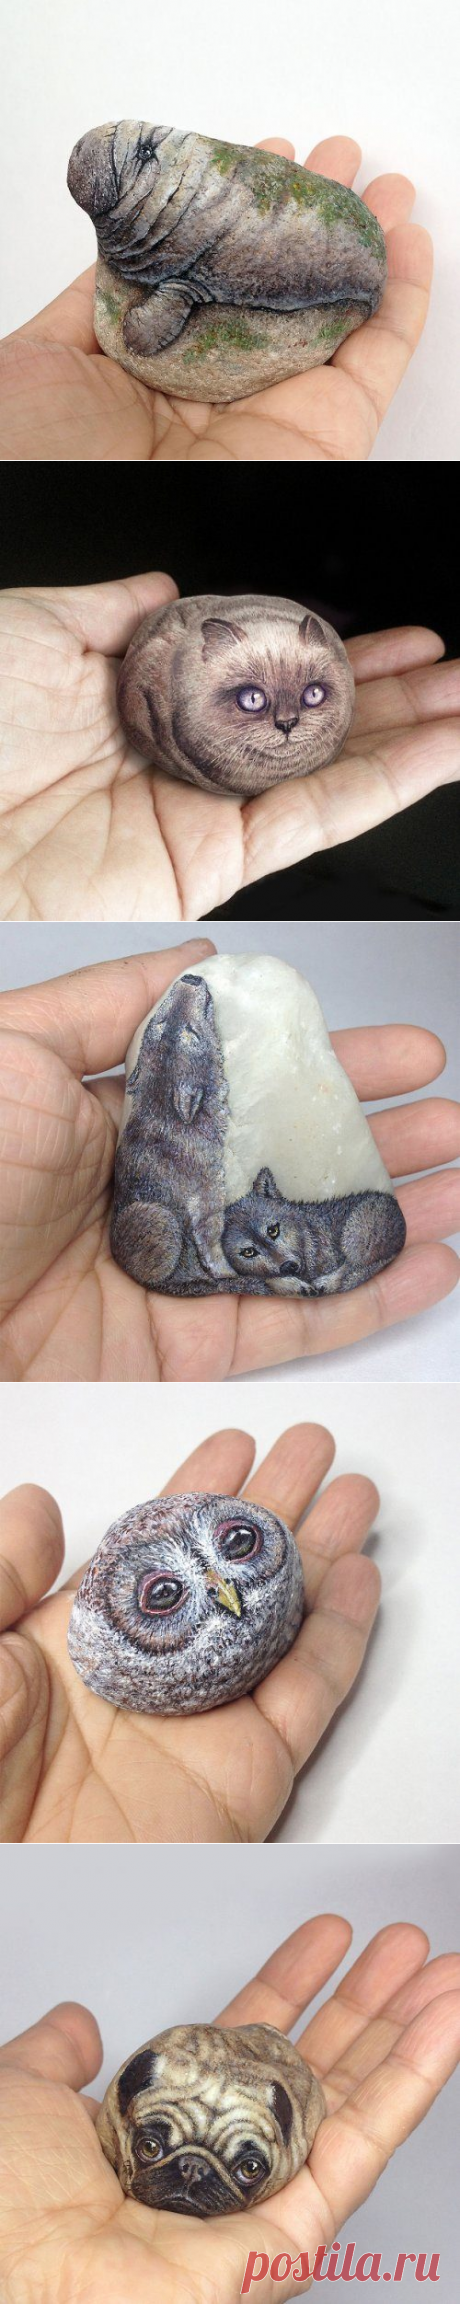 Миниатюрные животные на камнях